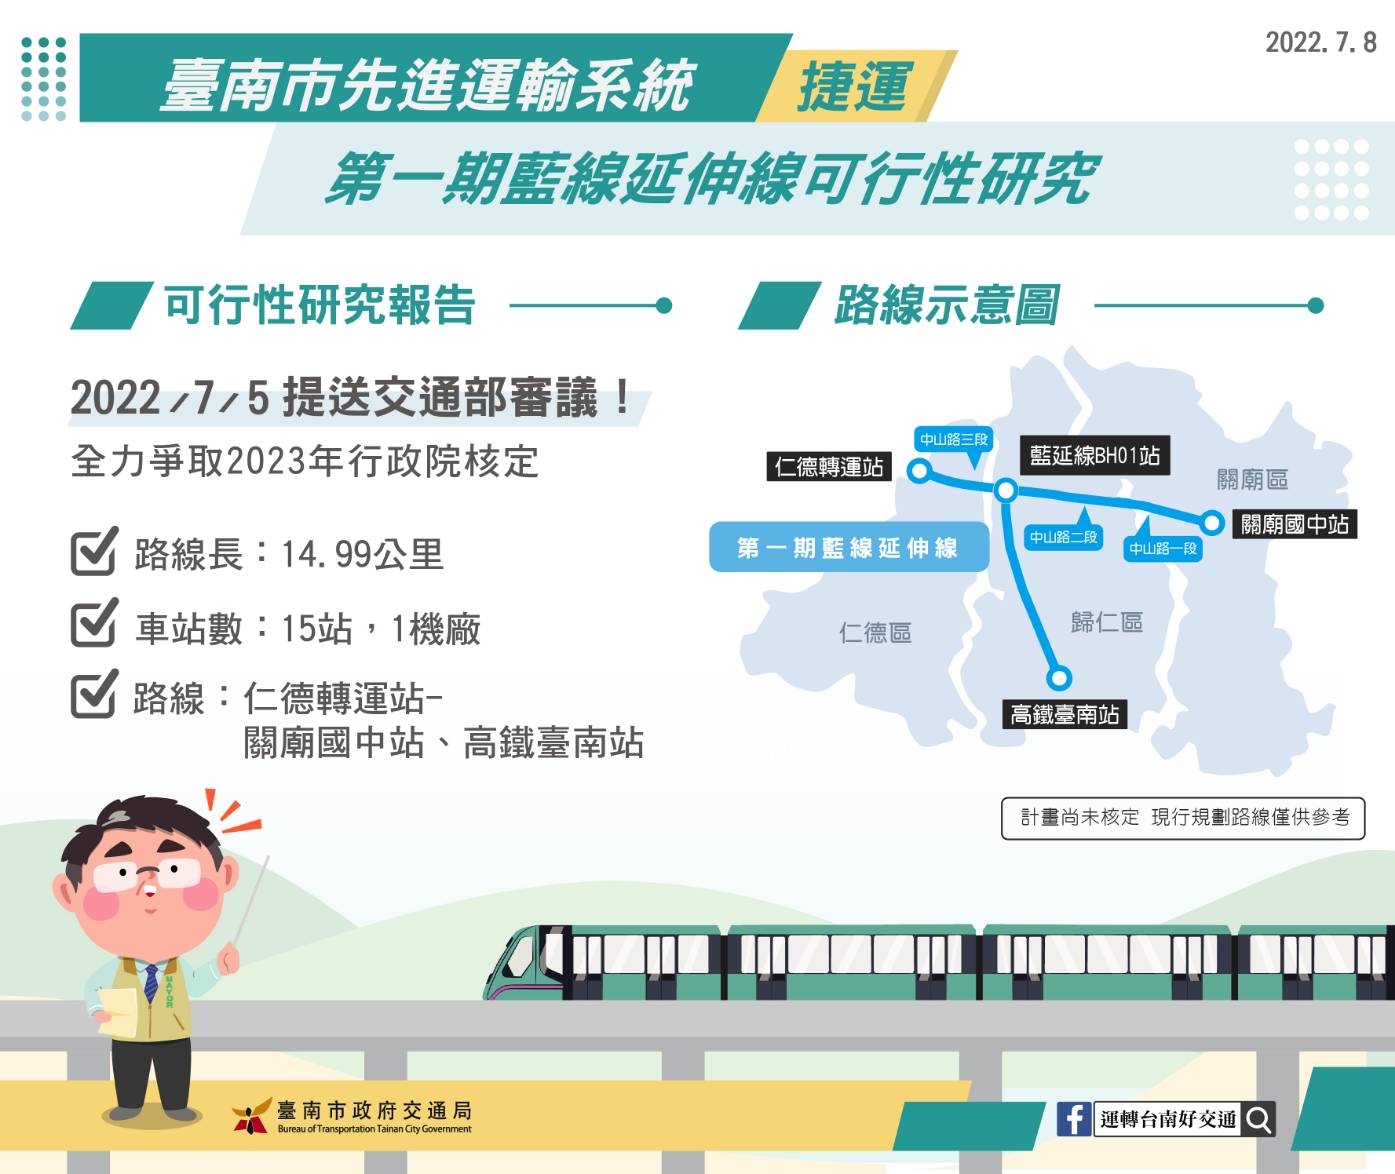 台南捷運藍線延伸線  爭取計畫儘速核定